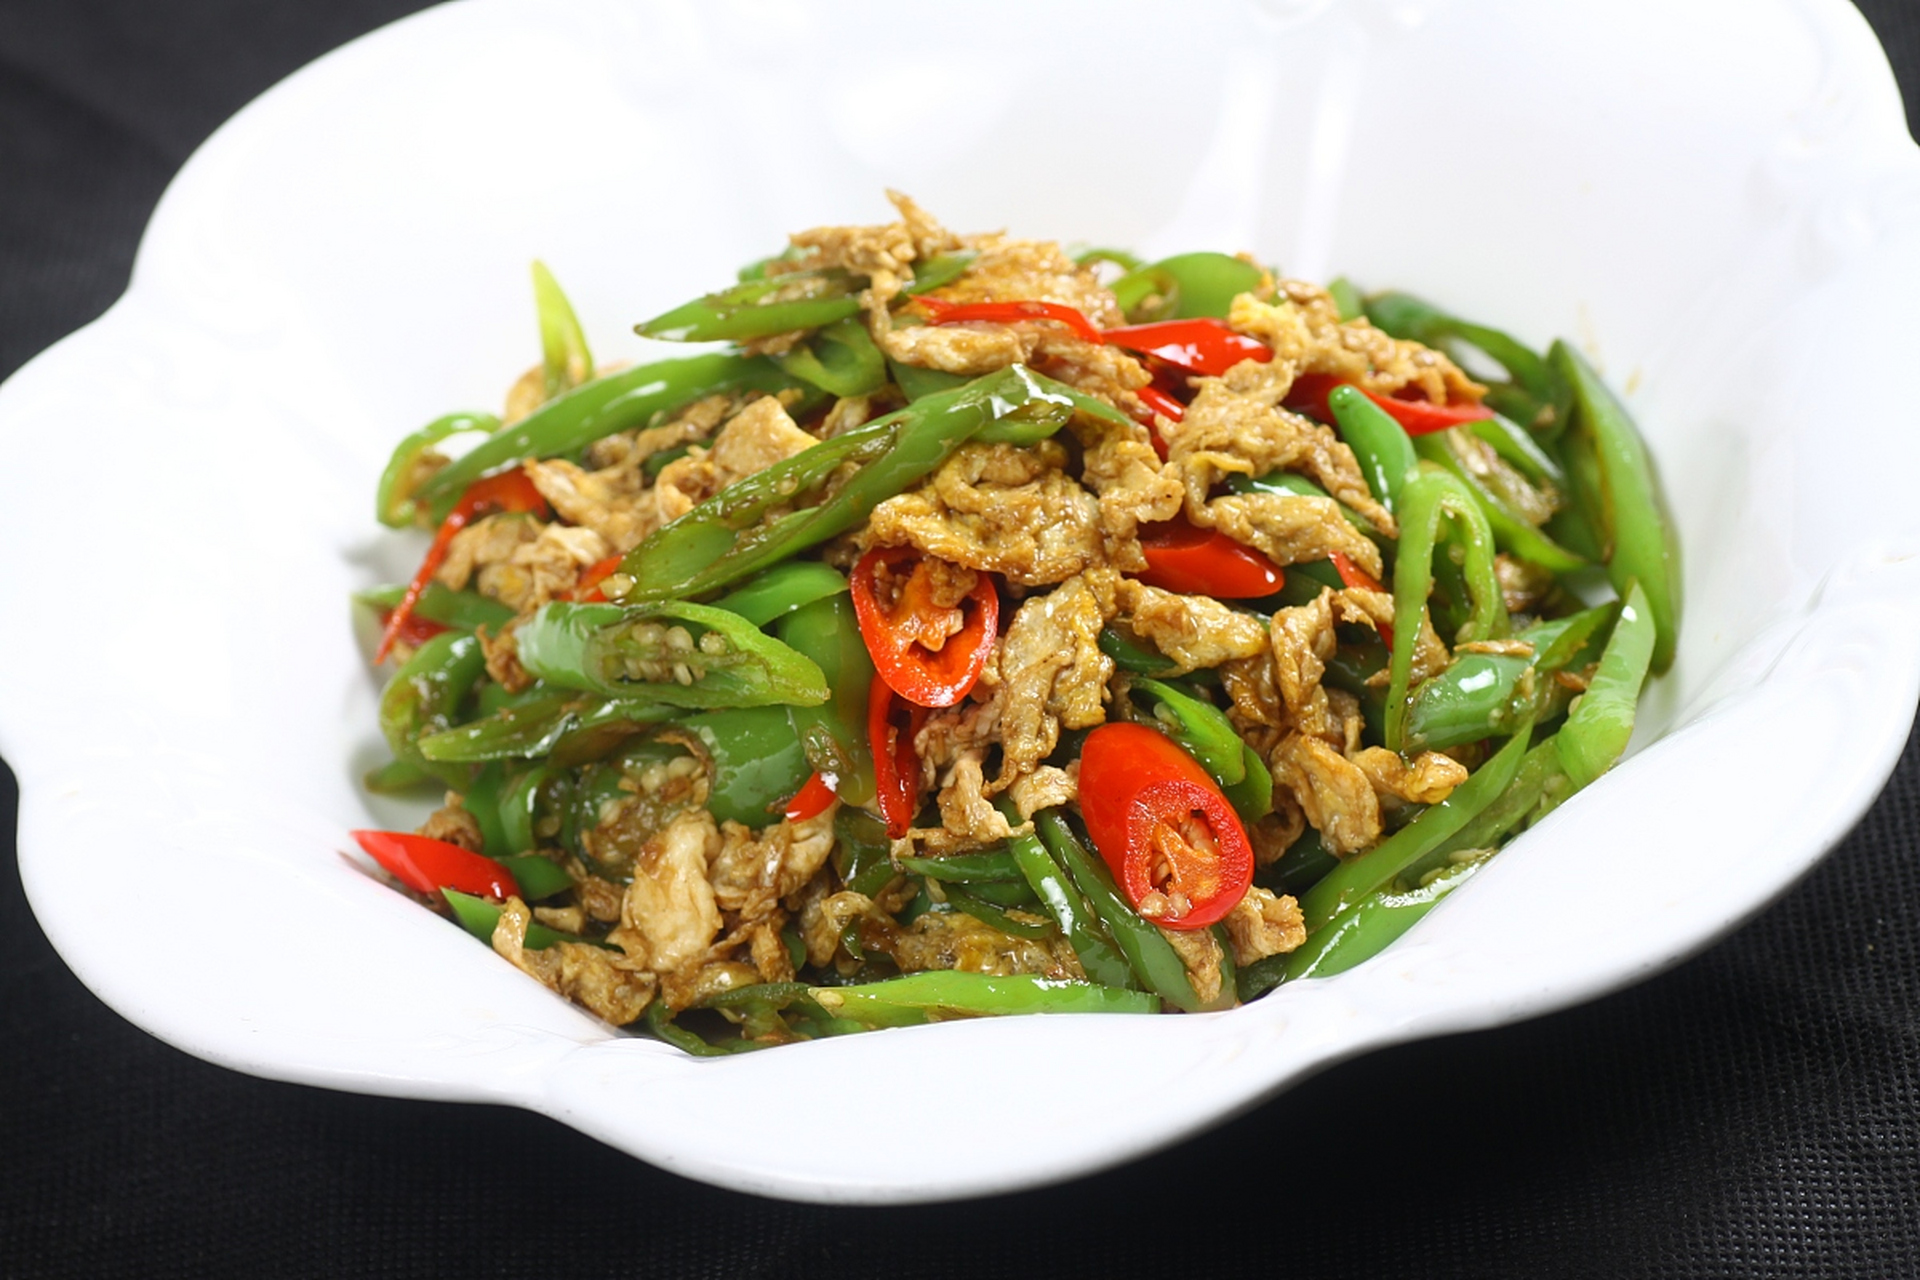 经典美食辣椒炒肉是一道传统的长沙菜,其历史可追溯到清朝